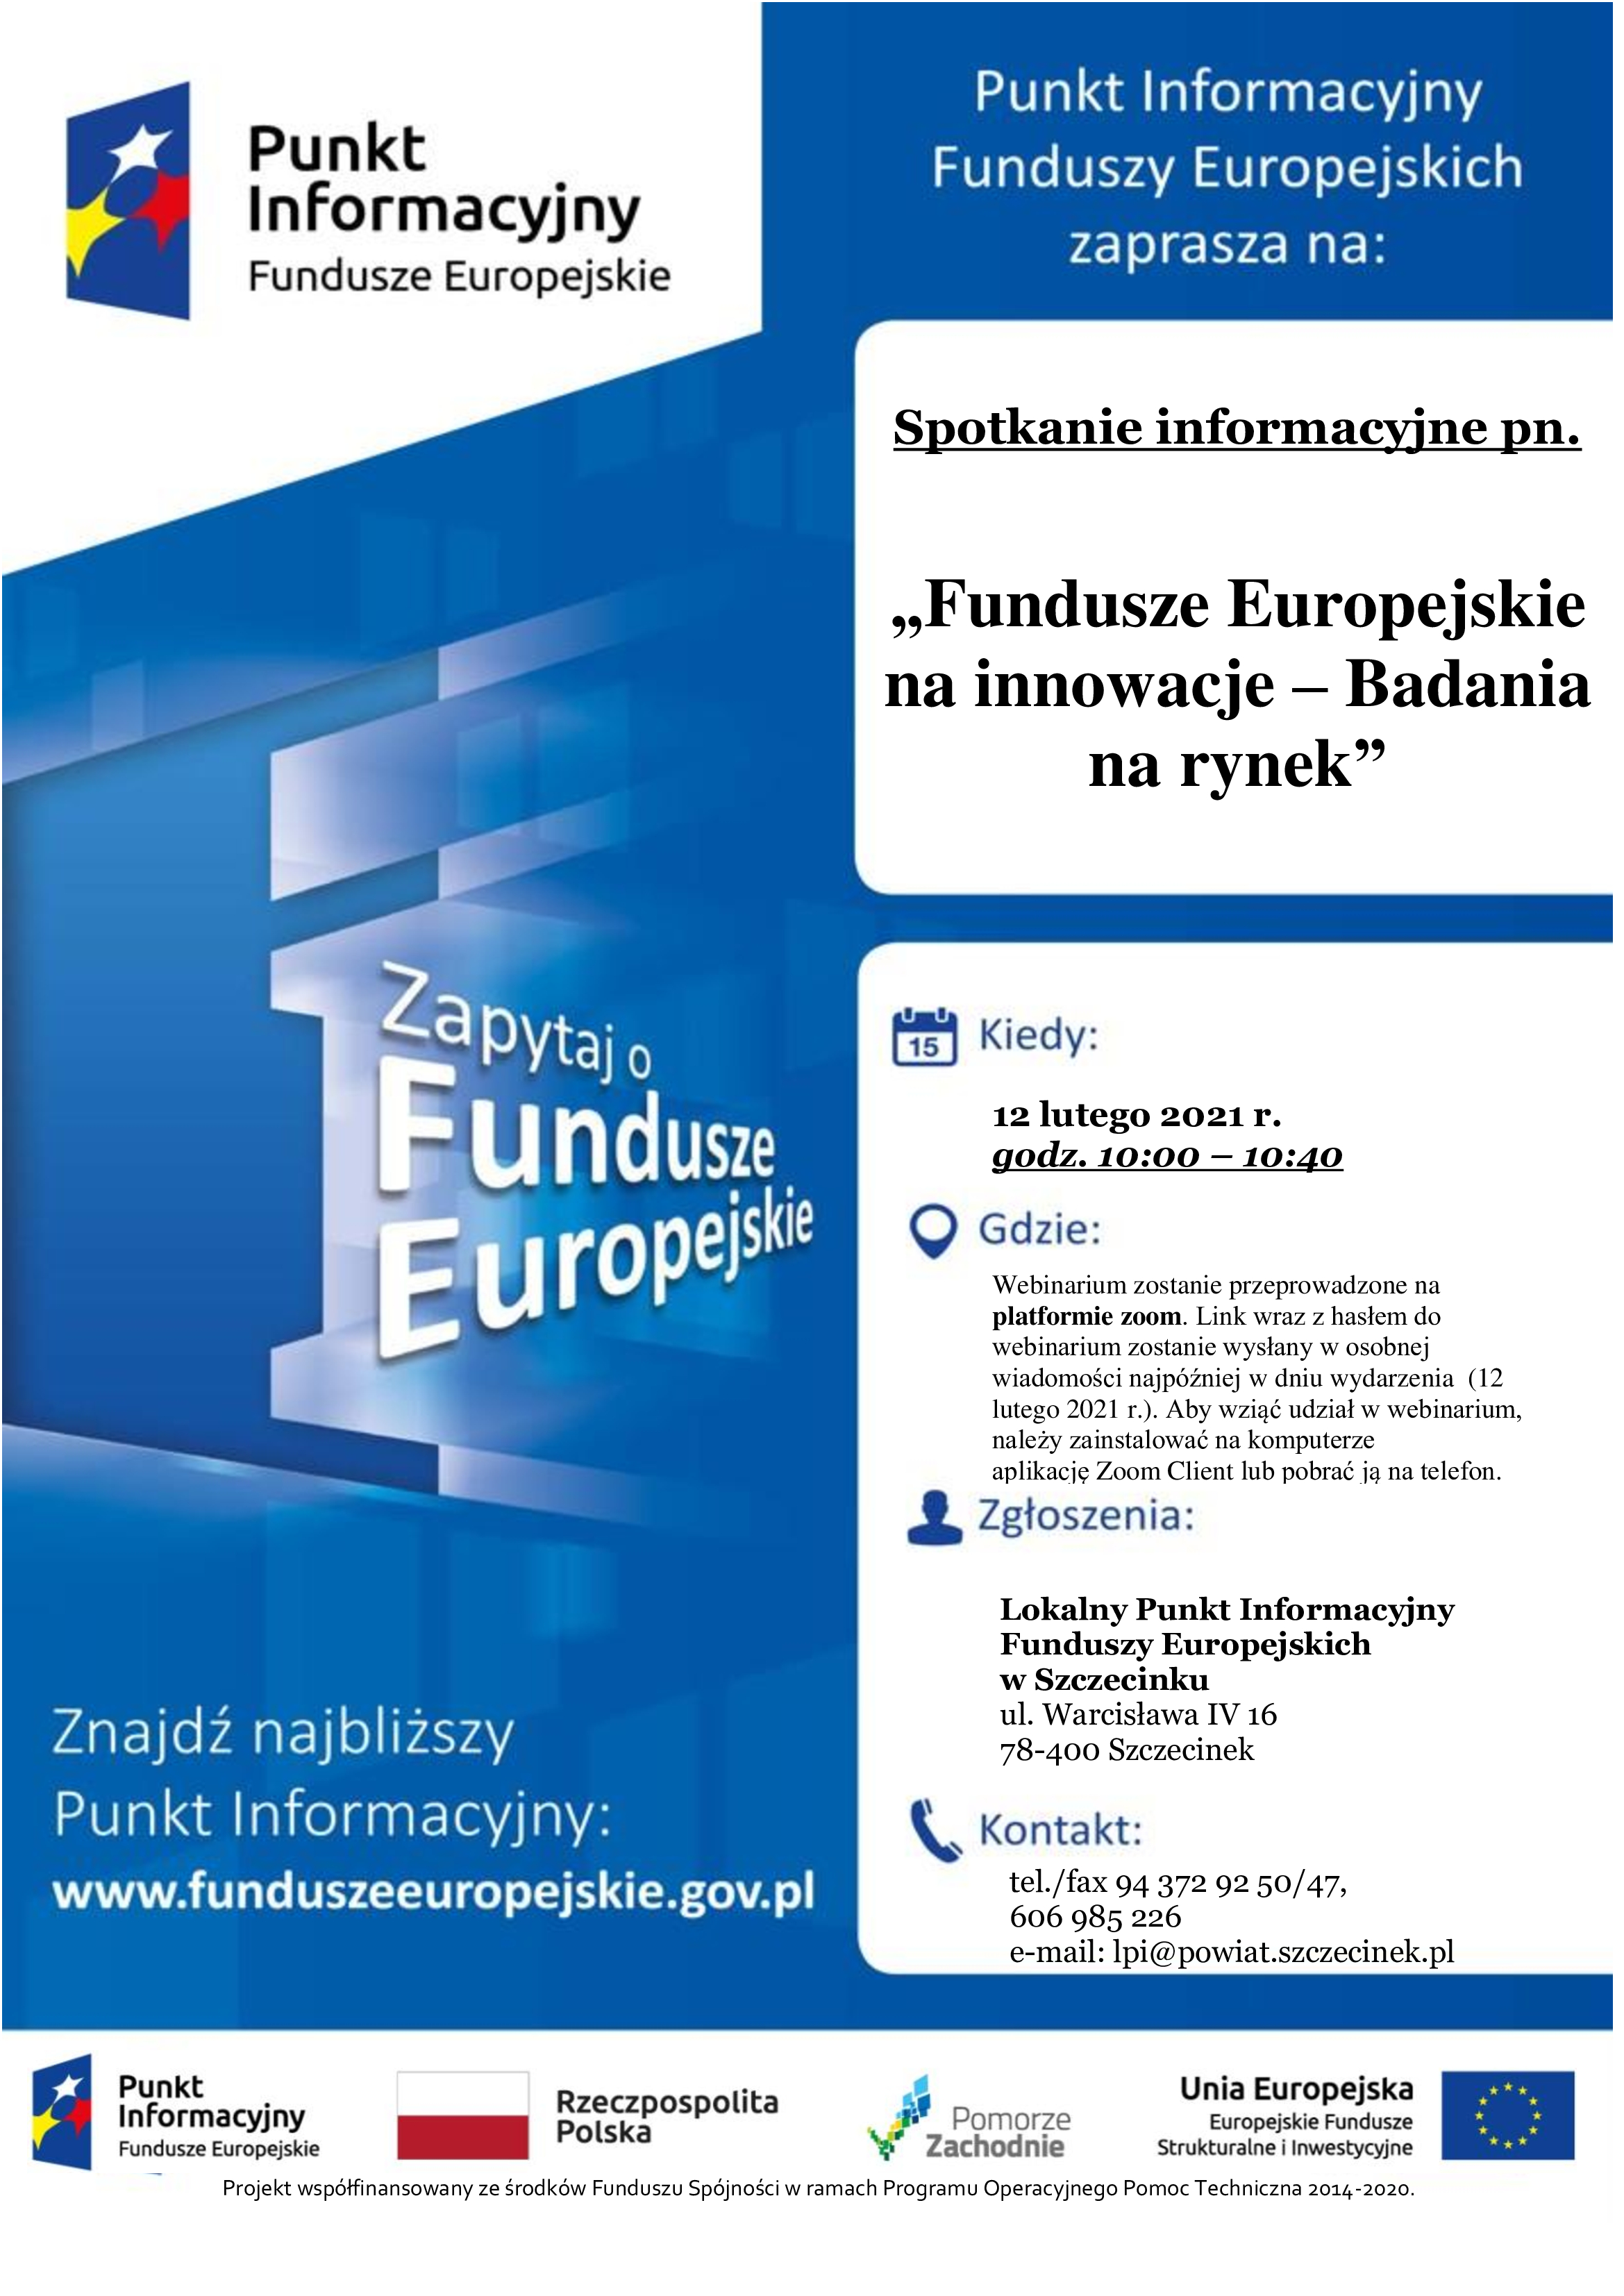 Zaproszenie do udziału w webinarium pn. „Fundusze Europejskie na innowacje – Badania na rynek”.